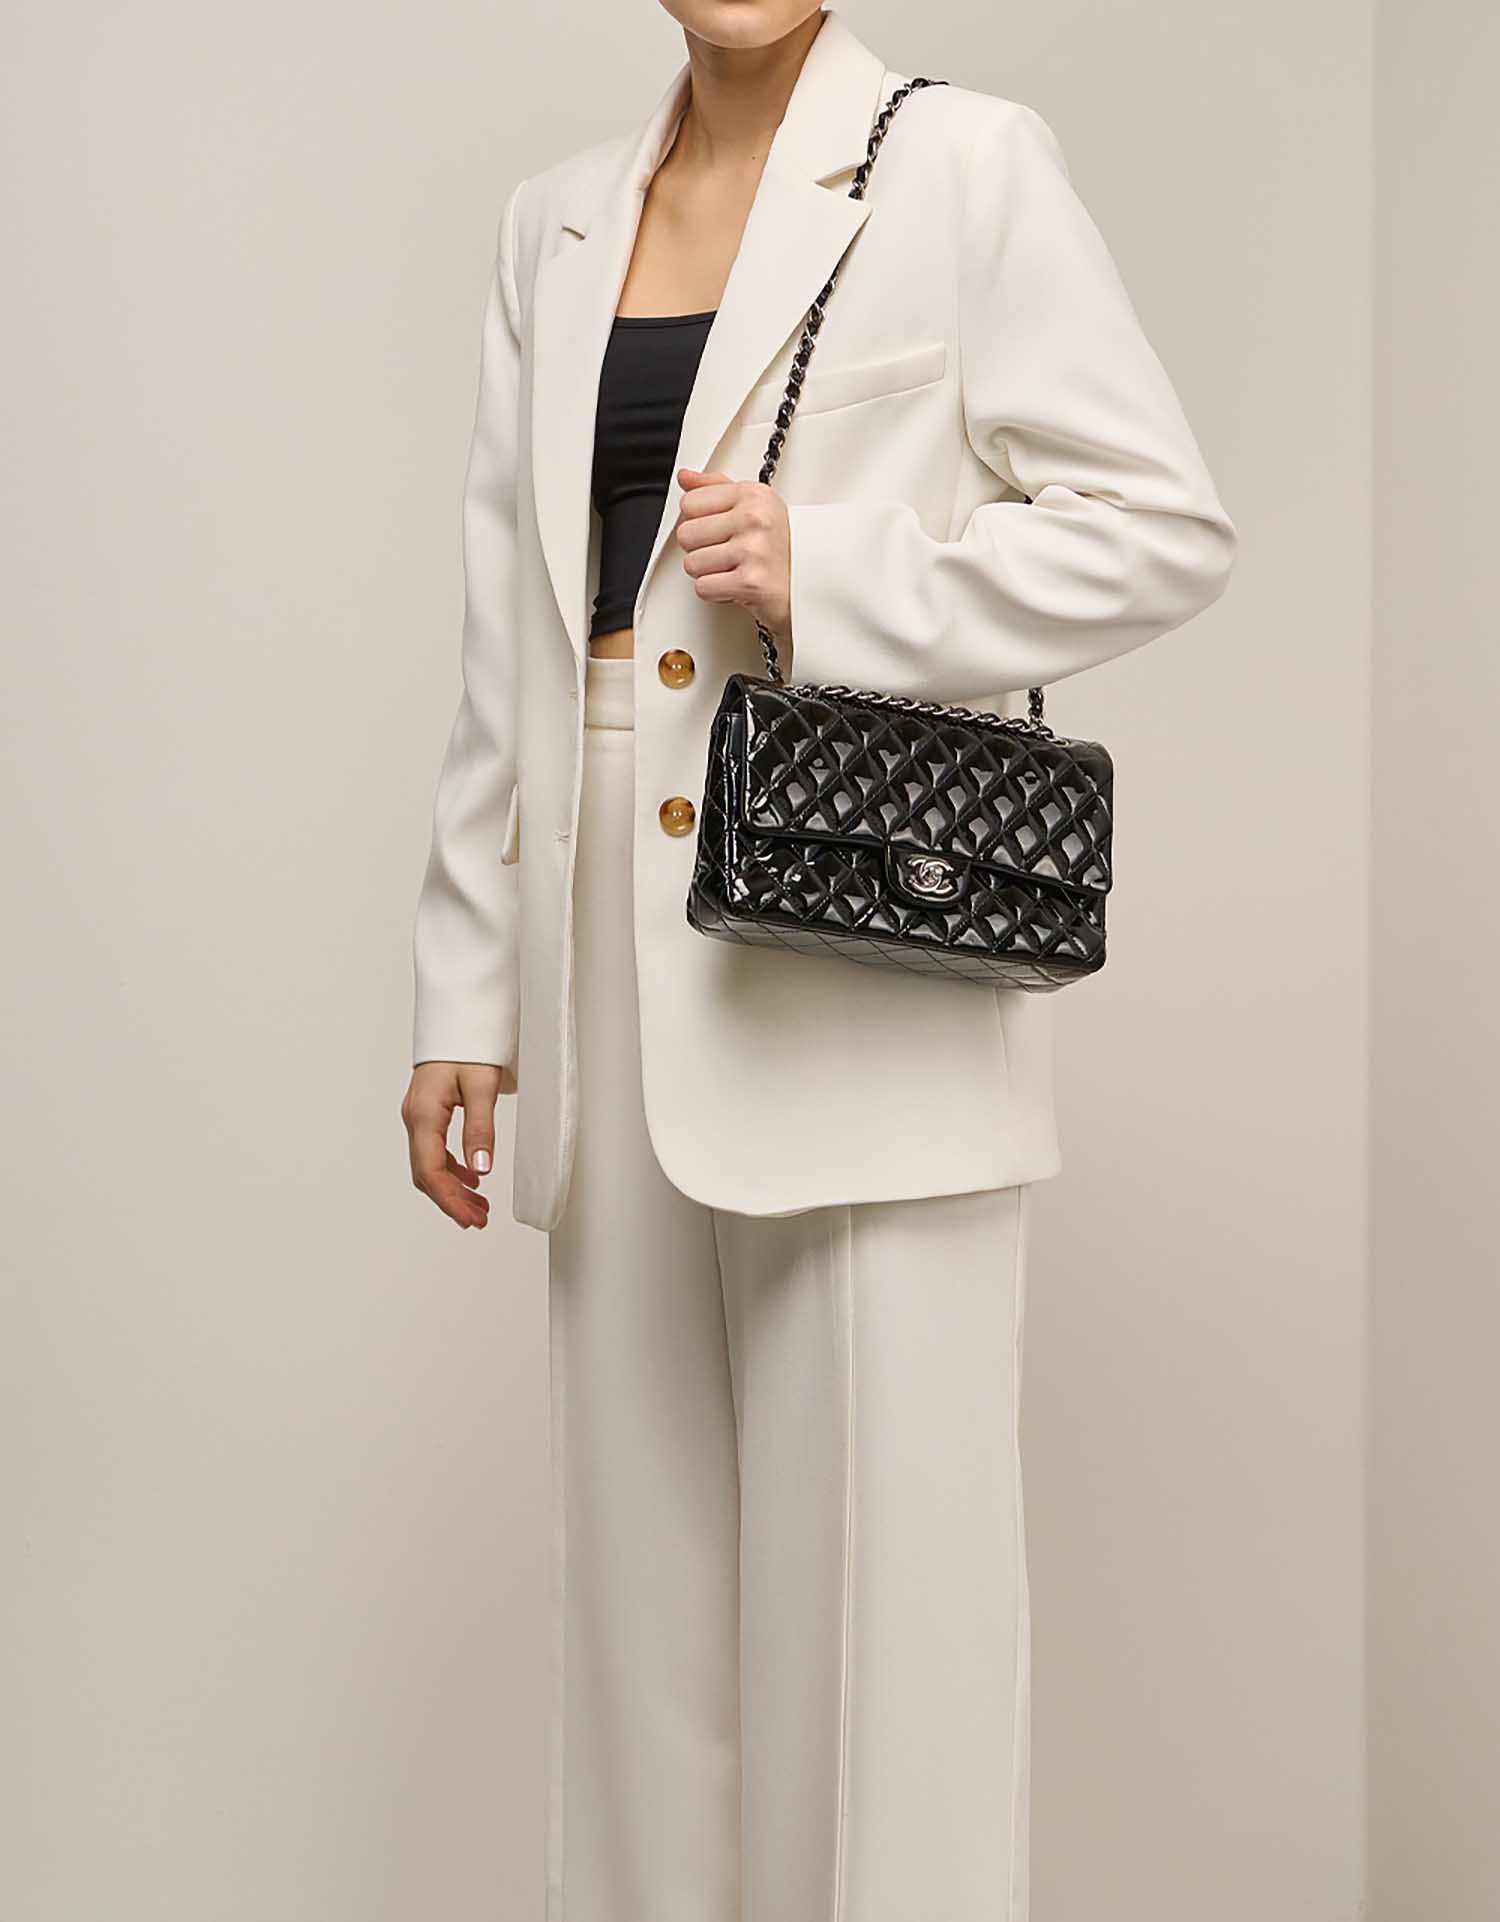 Chanel Timeless Medium Patent Black on Model | Sell your designer bag